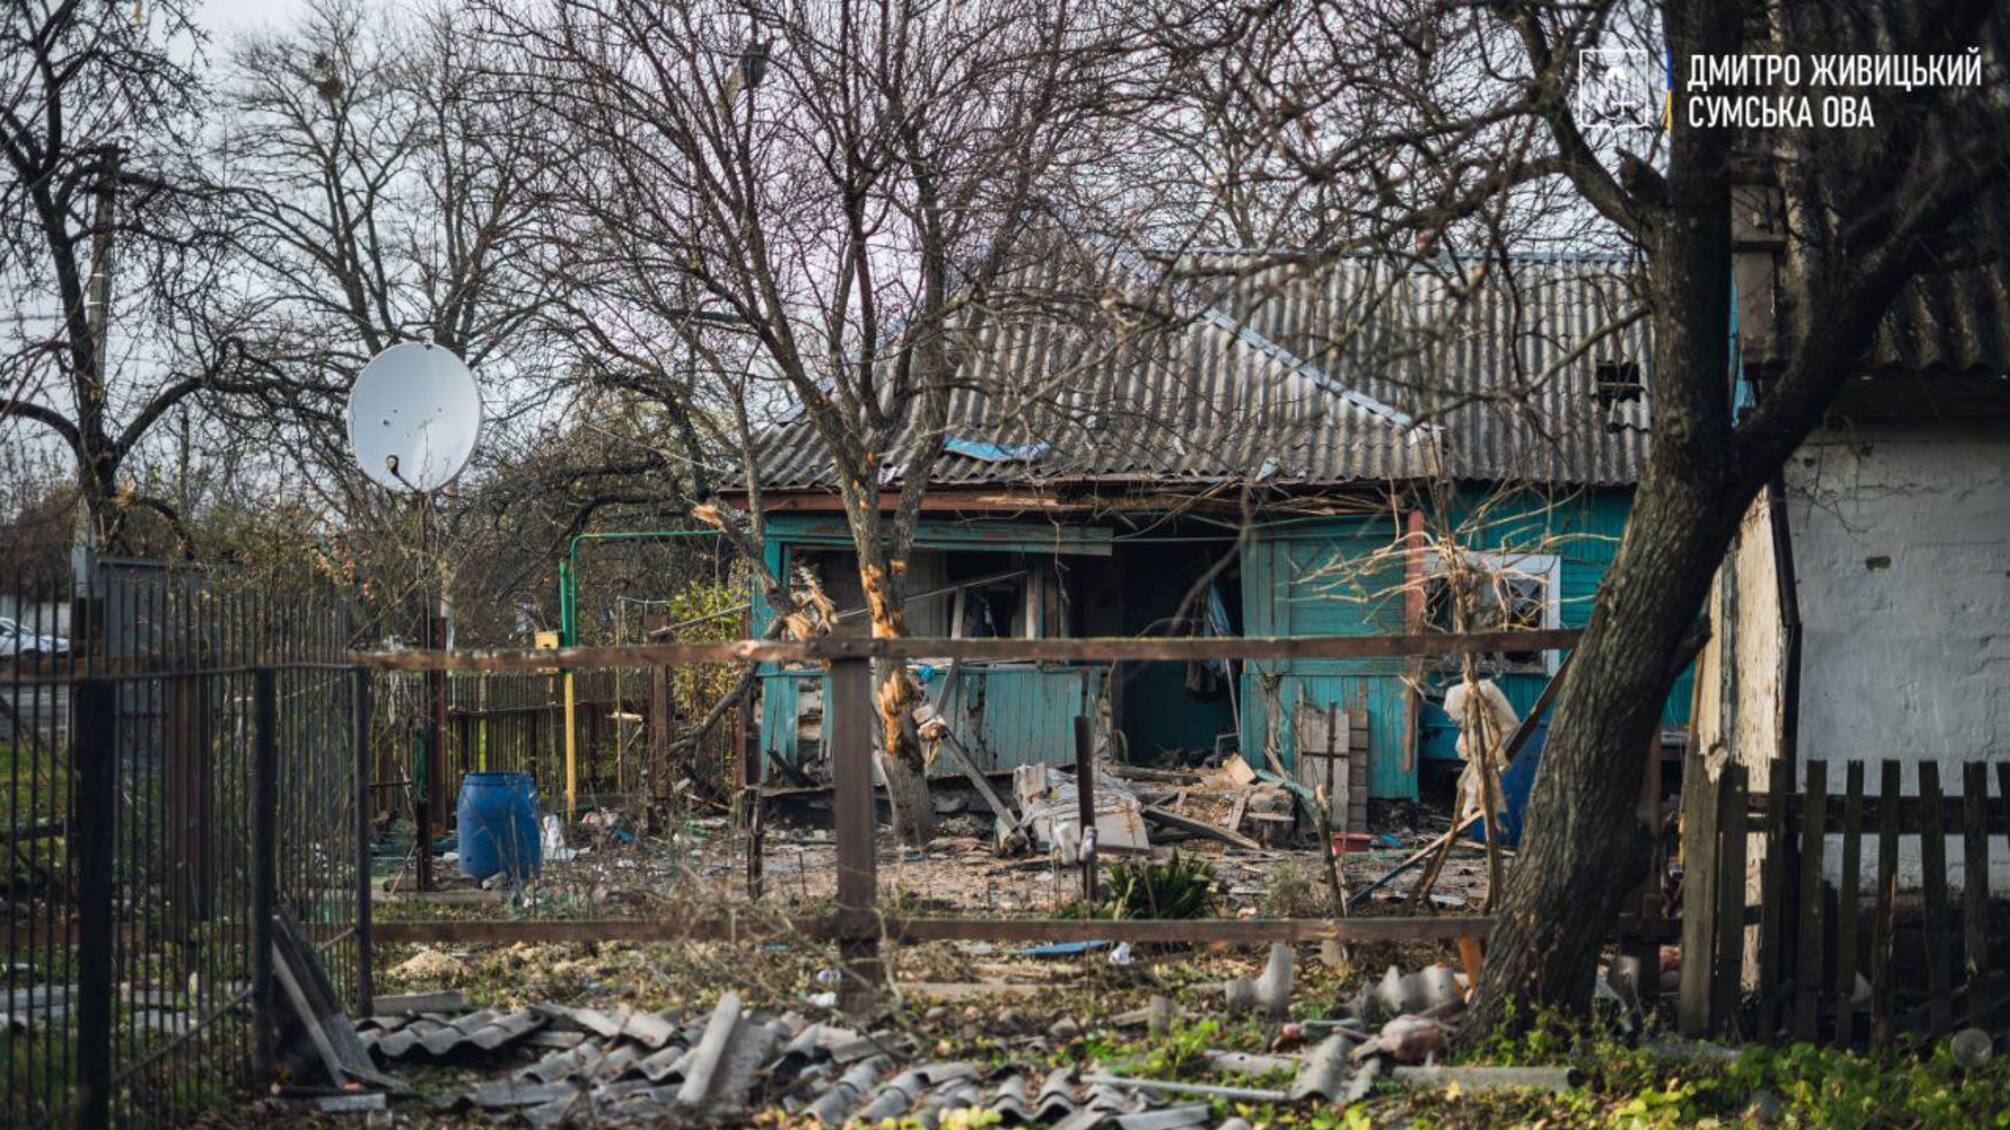 72 снаряда по общине в Сумской области выпустили оккупанты, есть жертвы (фото)